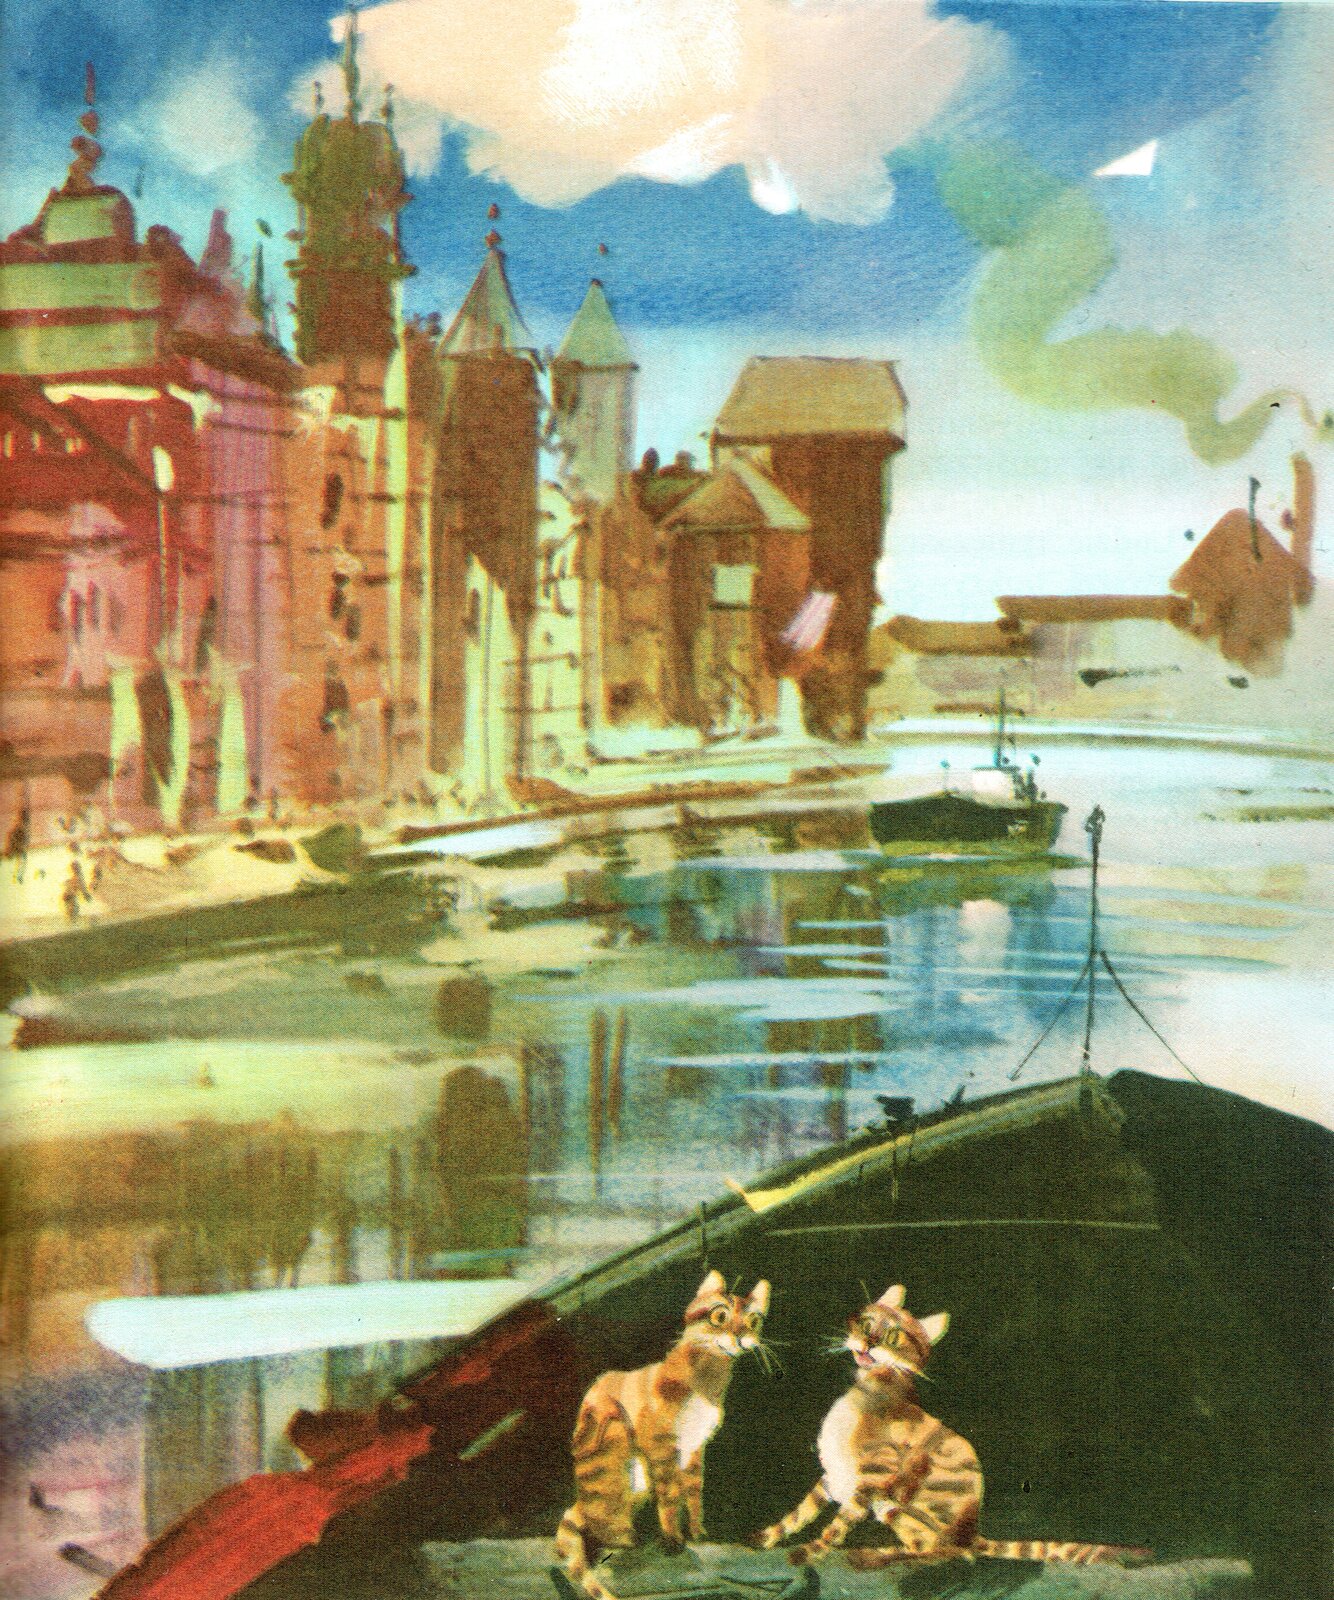 Ilustracja przedstawia grafikę z książki dla dzieci Jana Tettera "Ryży, Placek i trzynastu zbójców", na której znajdują się dwa koty płynące łódką po rzece w mieście. Po lewej stronie widoczne są budynki.